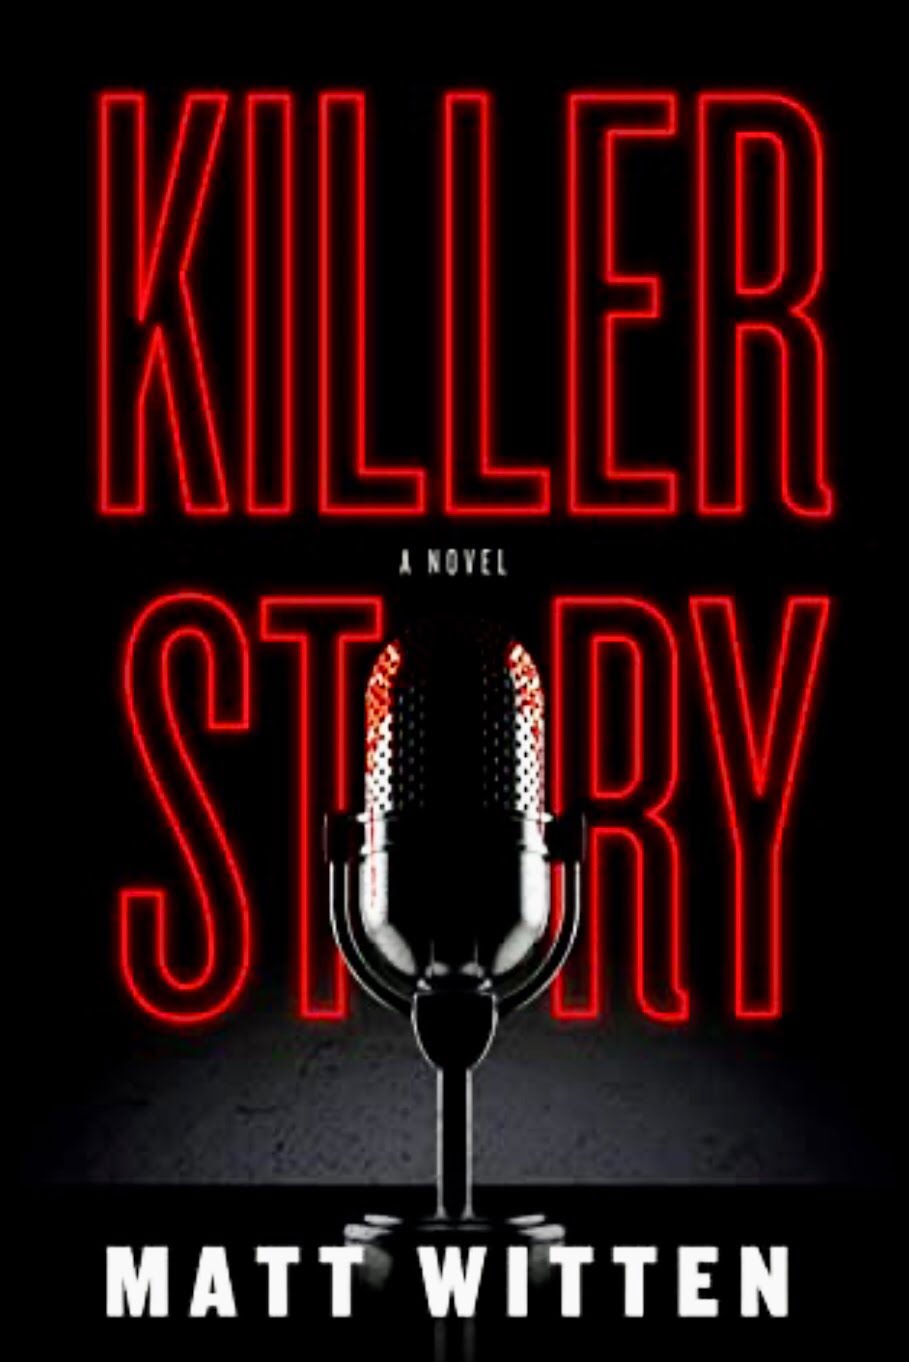 KILLER STORY BY MATT WITTEN – BOOK REVIEW